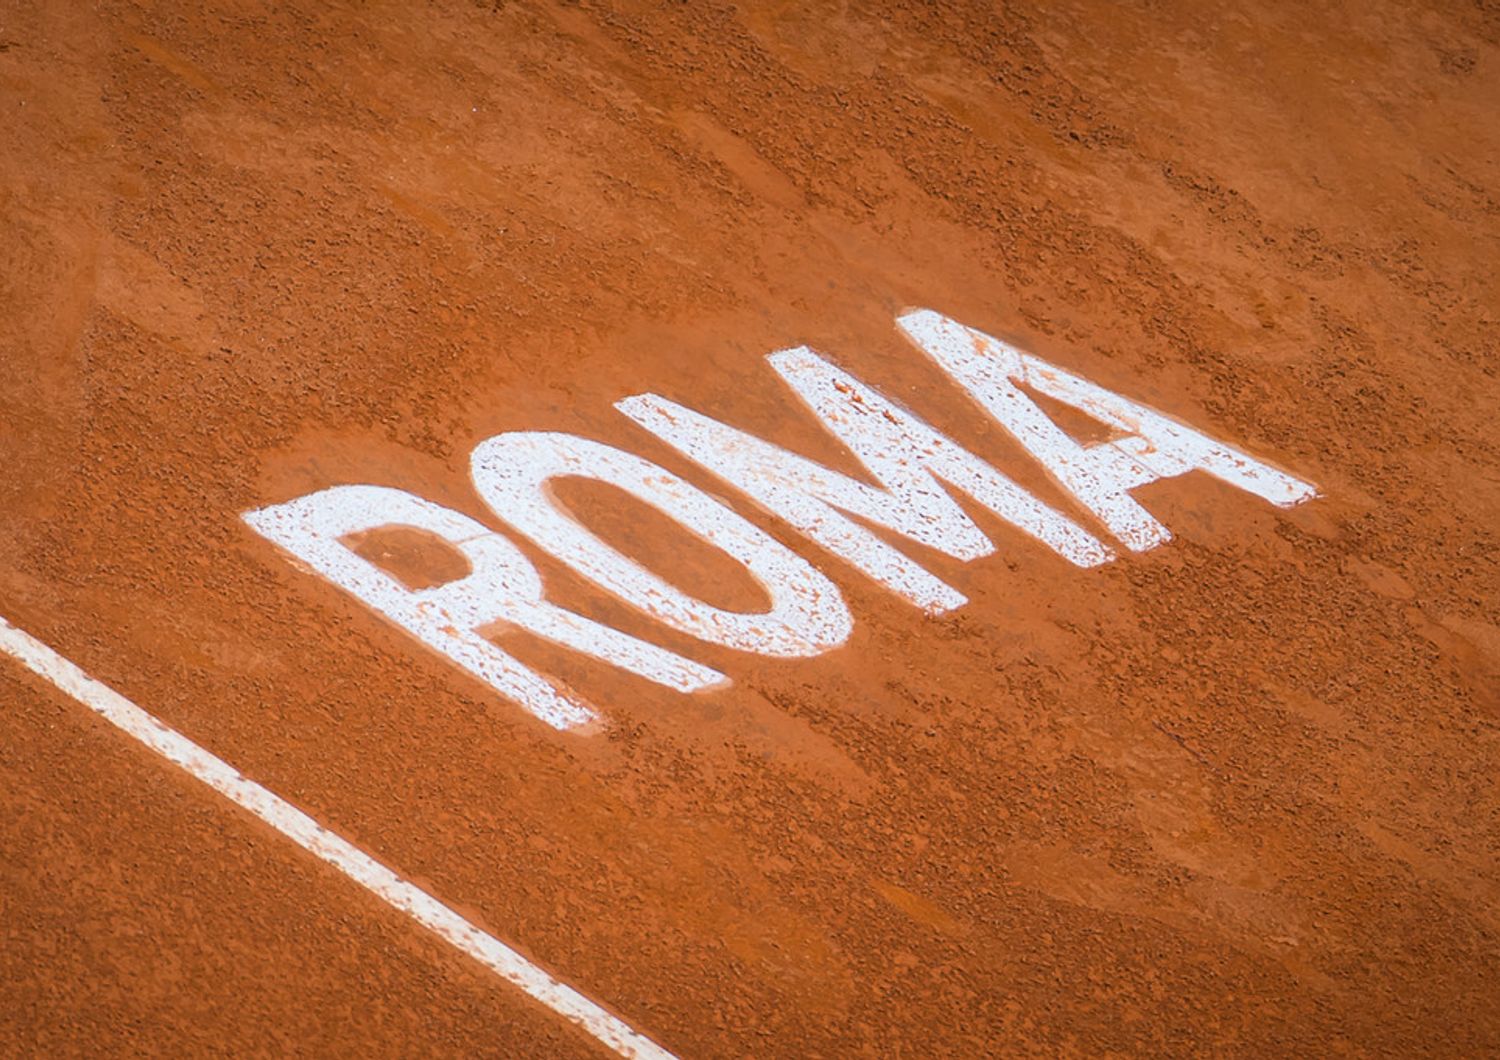 grande attesa internazionali tennis italia